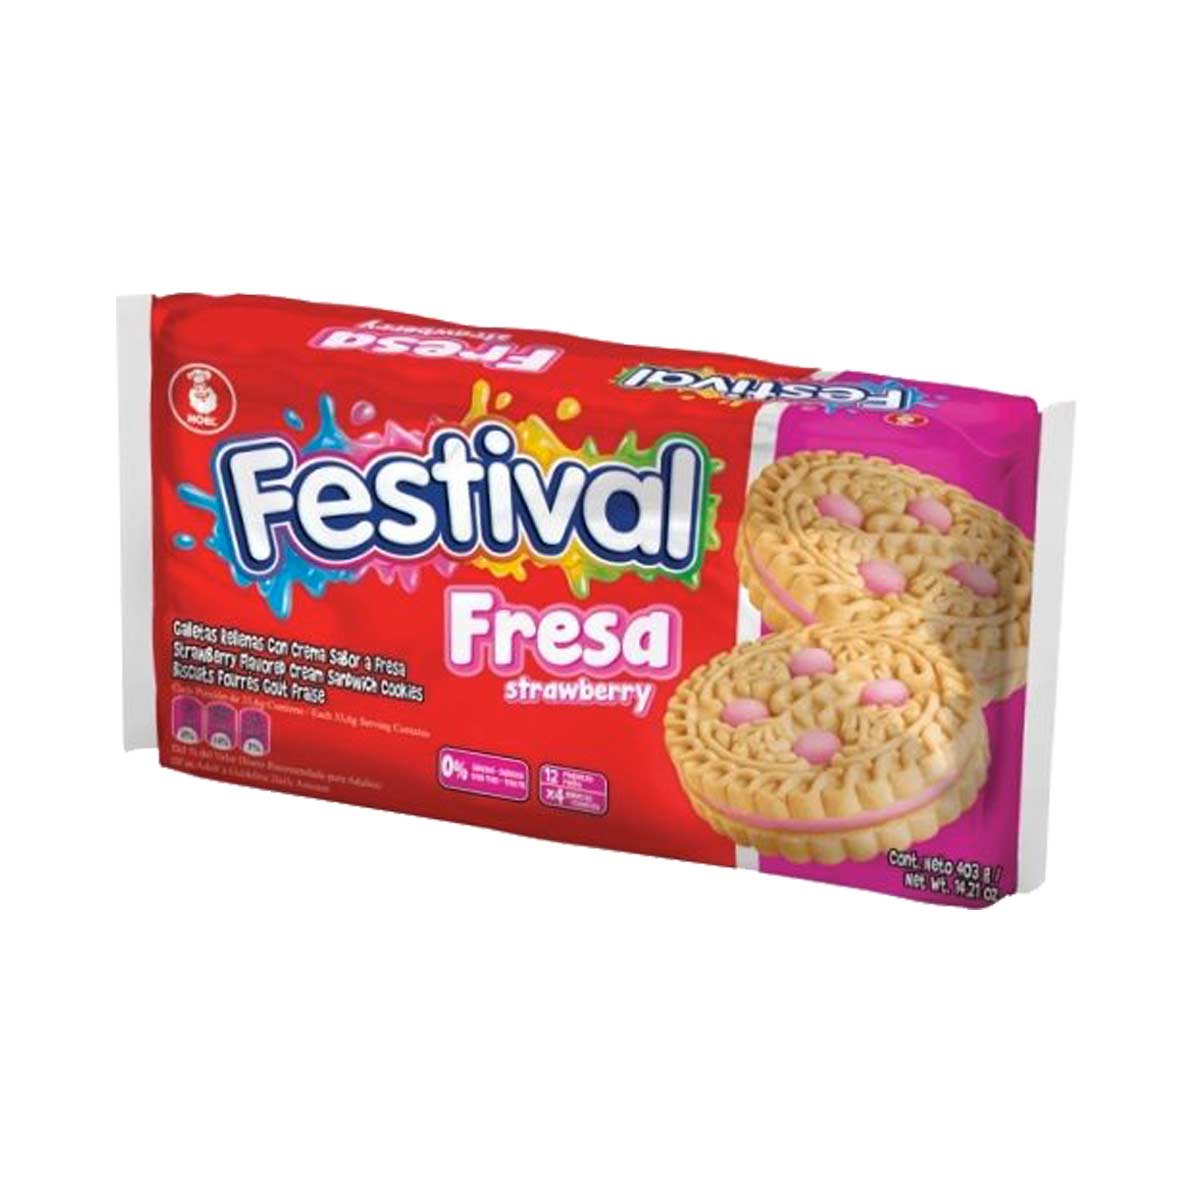 festivalfresa12